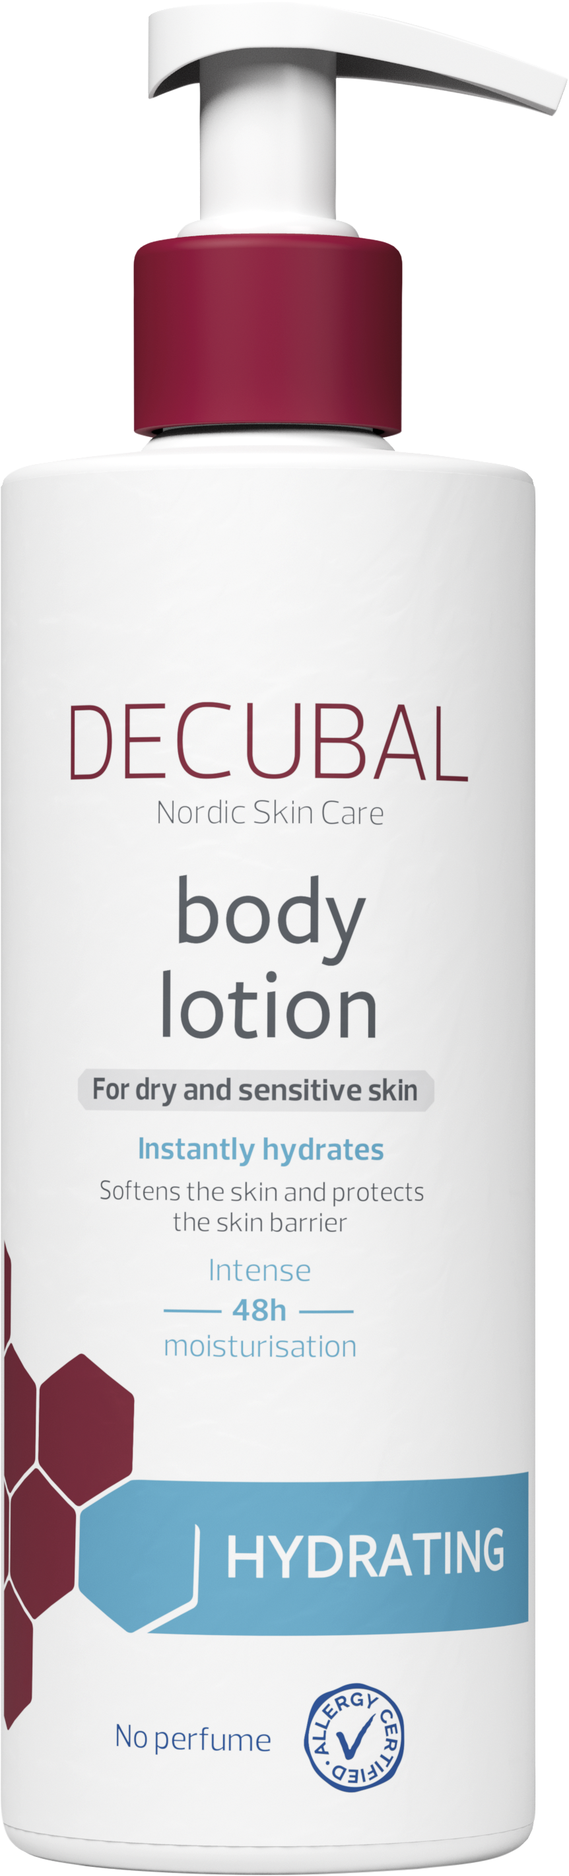 Decubal hydrating body lotion, 400 ml för 169 kr på Lloyds Apotek